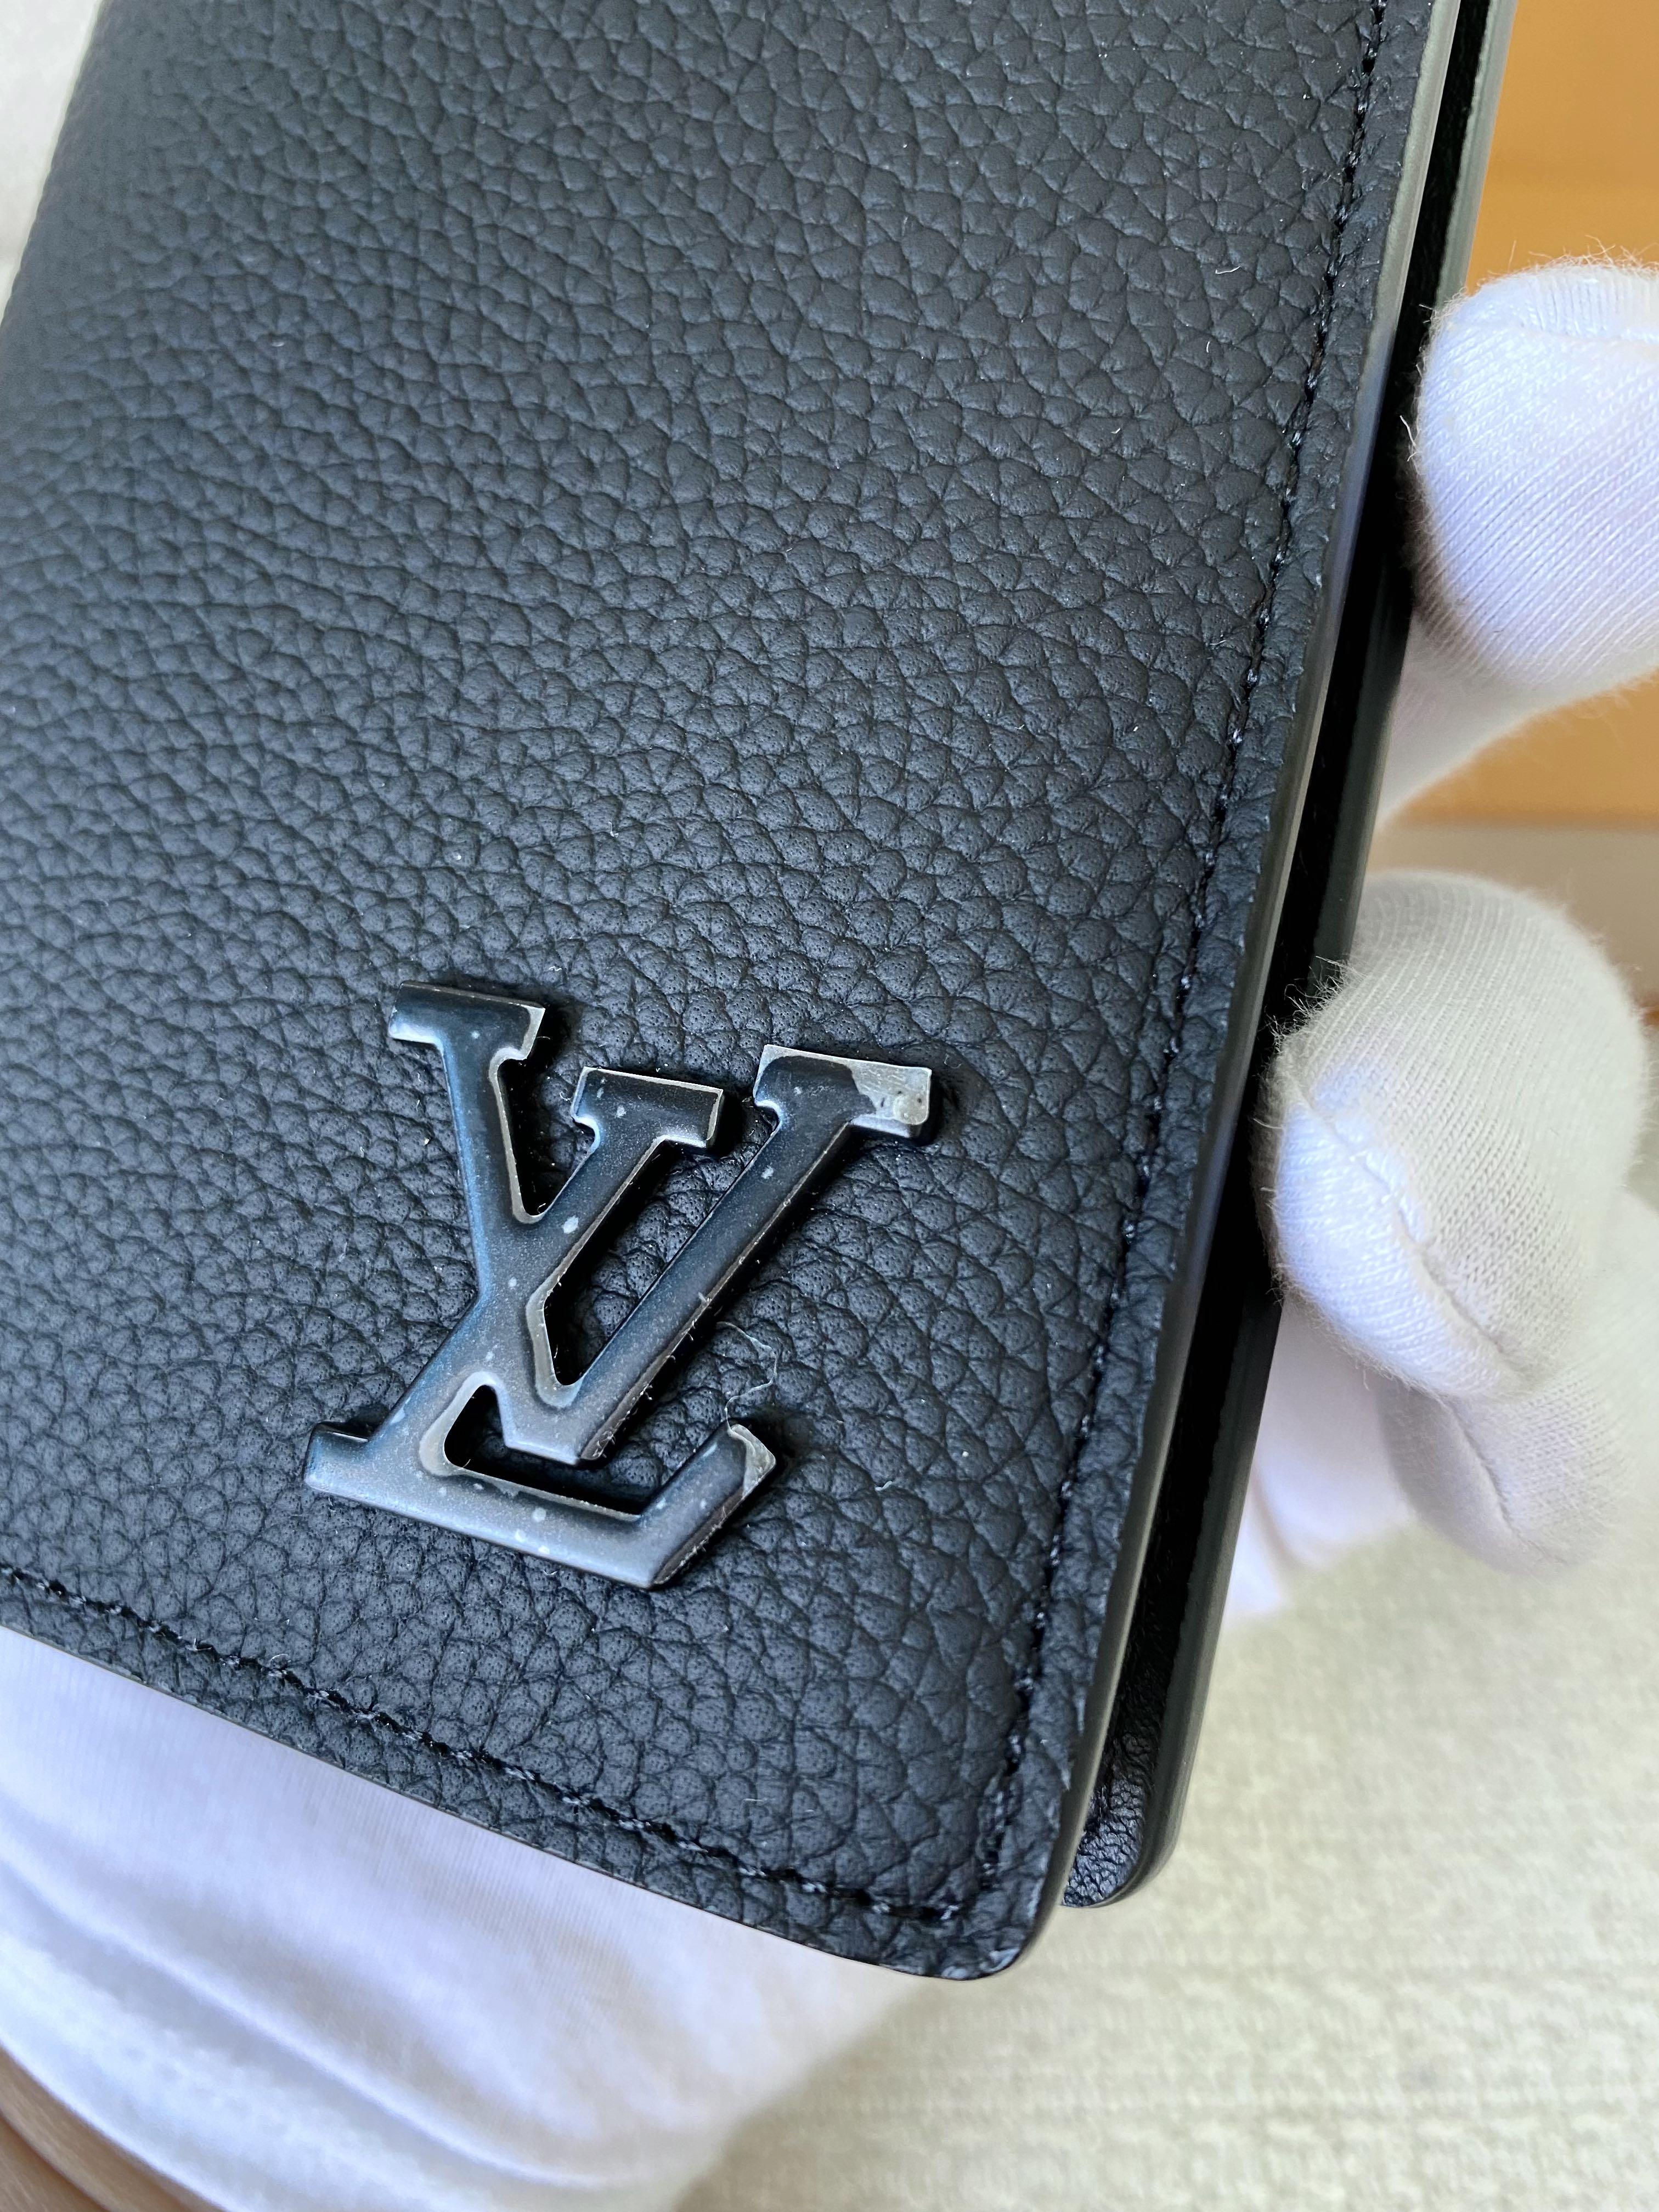 Louis Vuitton M30285 Brazza Wallet